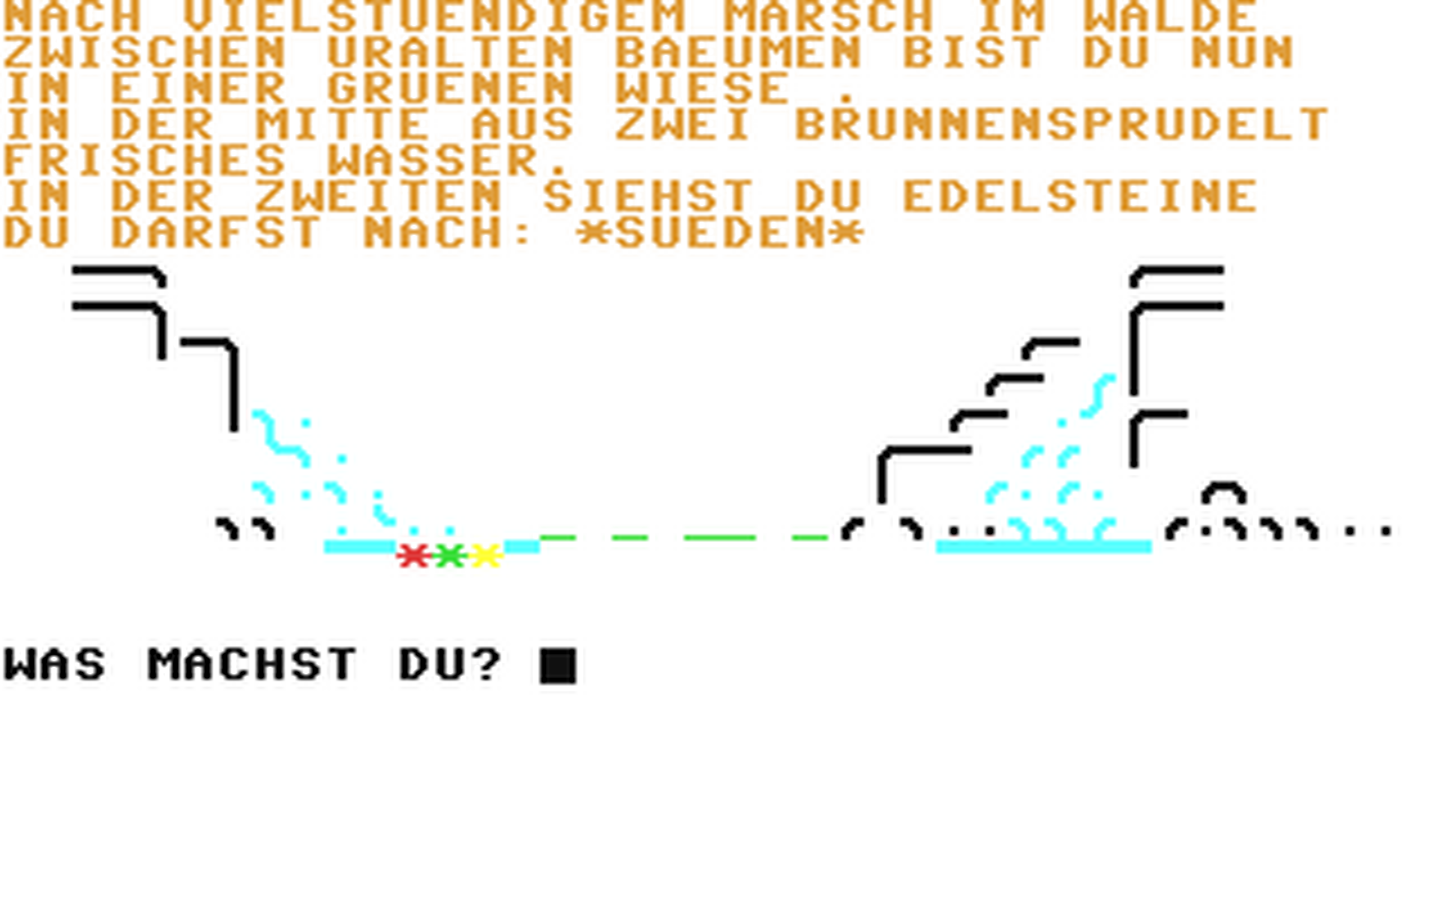 C64 GameBase Lanze_der_Macht_und_die_schwarze_Festung,_Die Systems_Editoriale_s.r.l./Commodore_(Software)_Club 1985